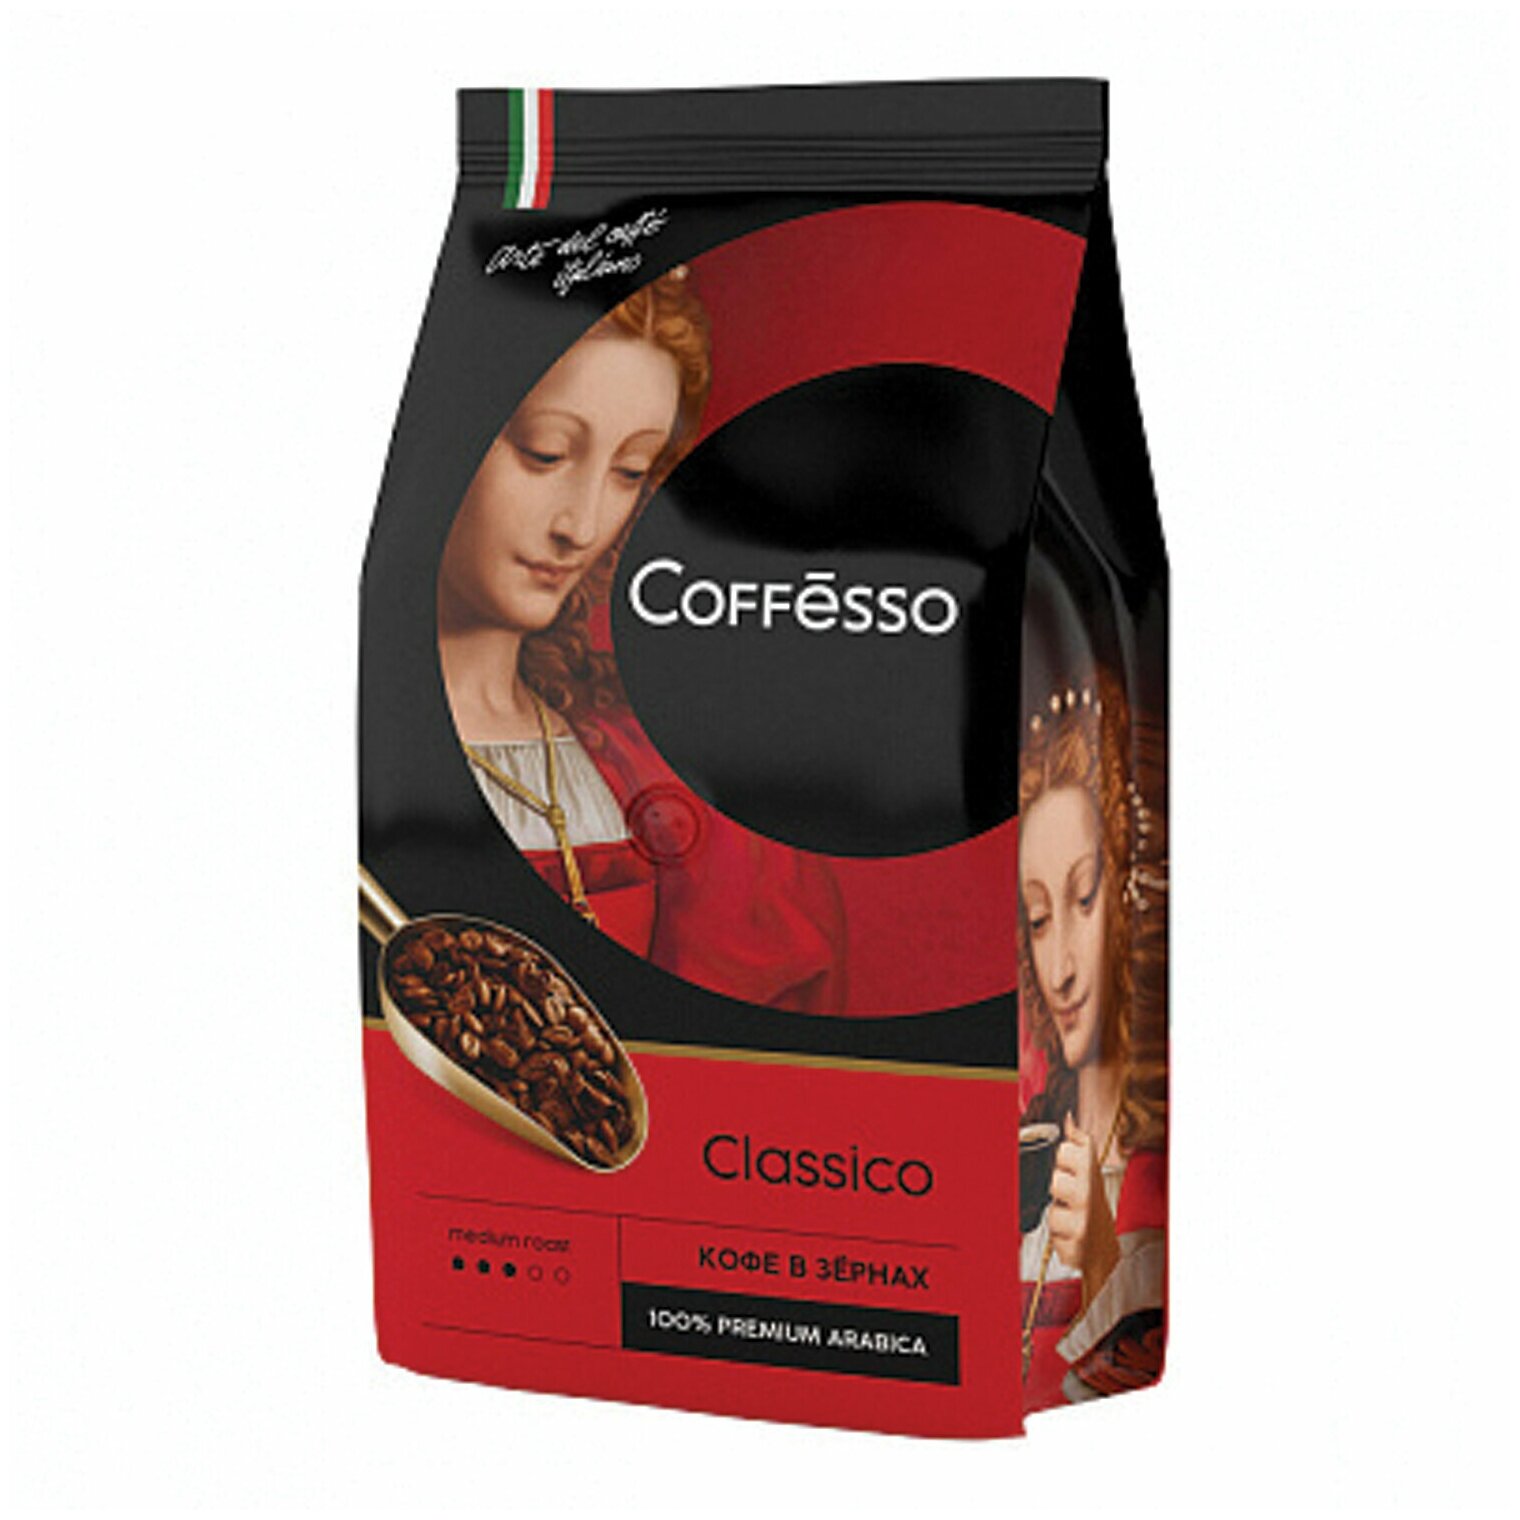 Кофе в зернах COFFESSO "Classico", 100% арабика, 1000 г, вакуумная упаковка, 100895 - 1 шт.